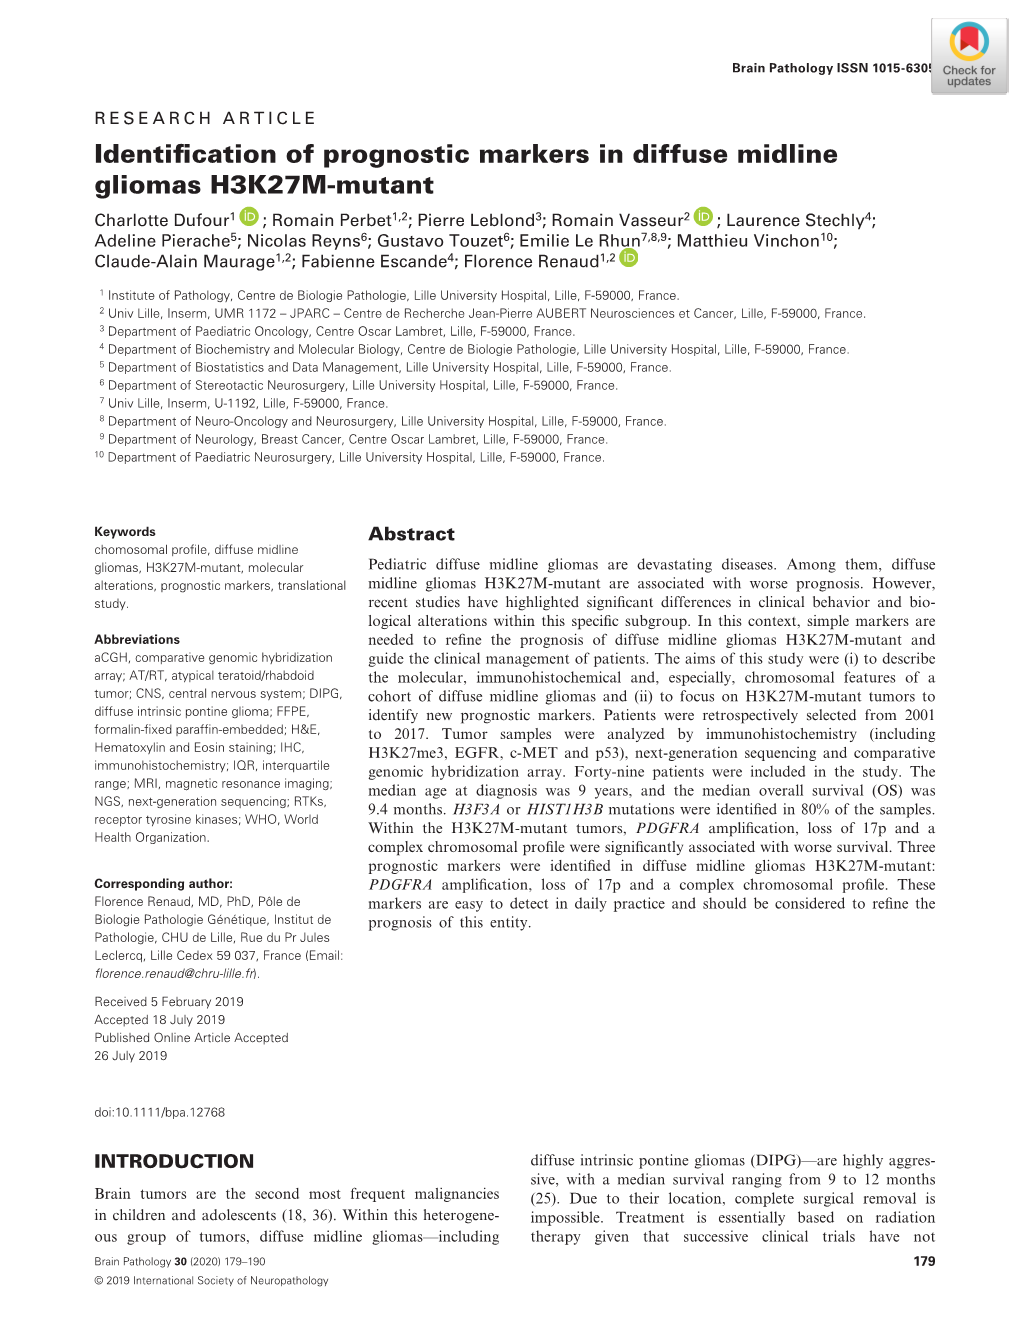 Identification of Prognostic Markers in Diffuse Midline Gliomas H3K27M